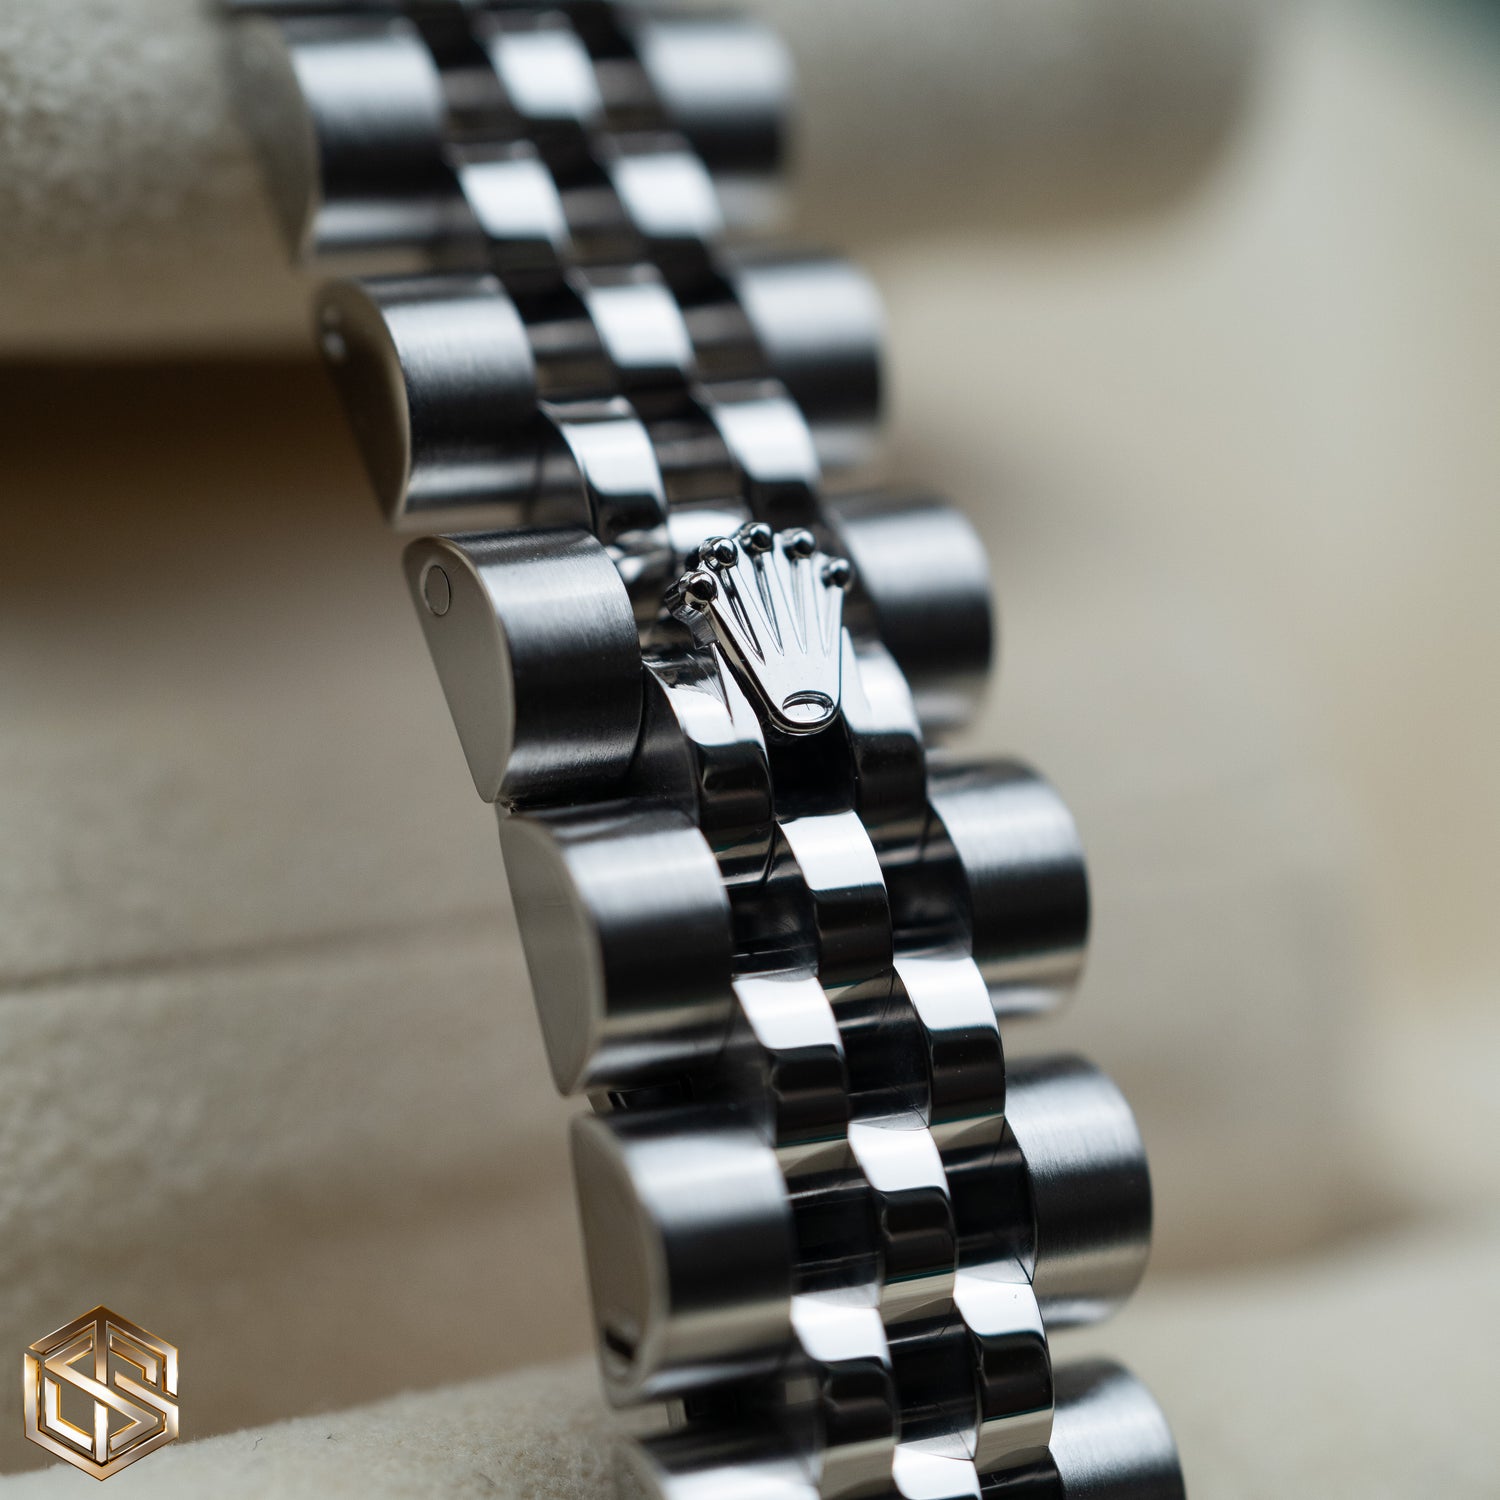 Rolex 179174 Lady-Datejust 28 Silver Dial Jubilee Bracelet 2014 Full Set Watch